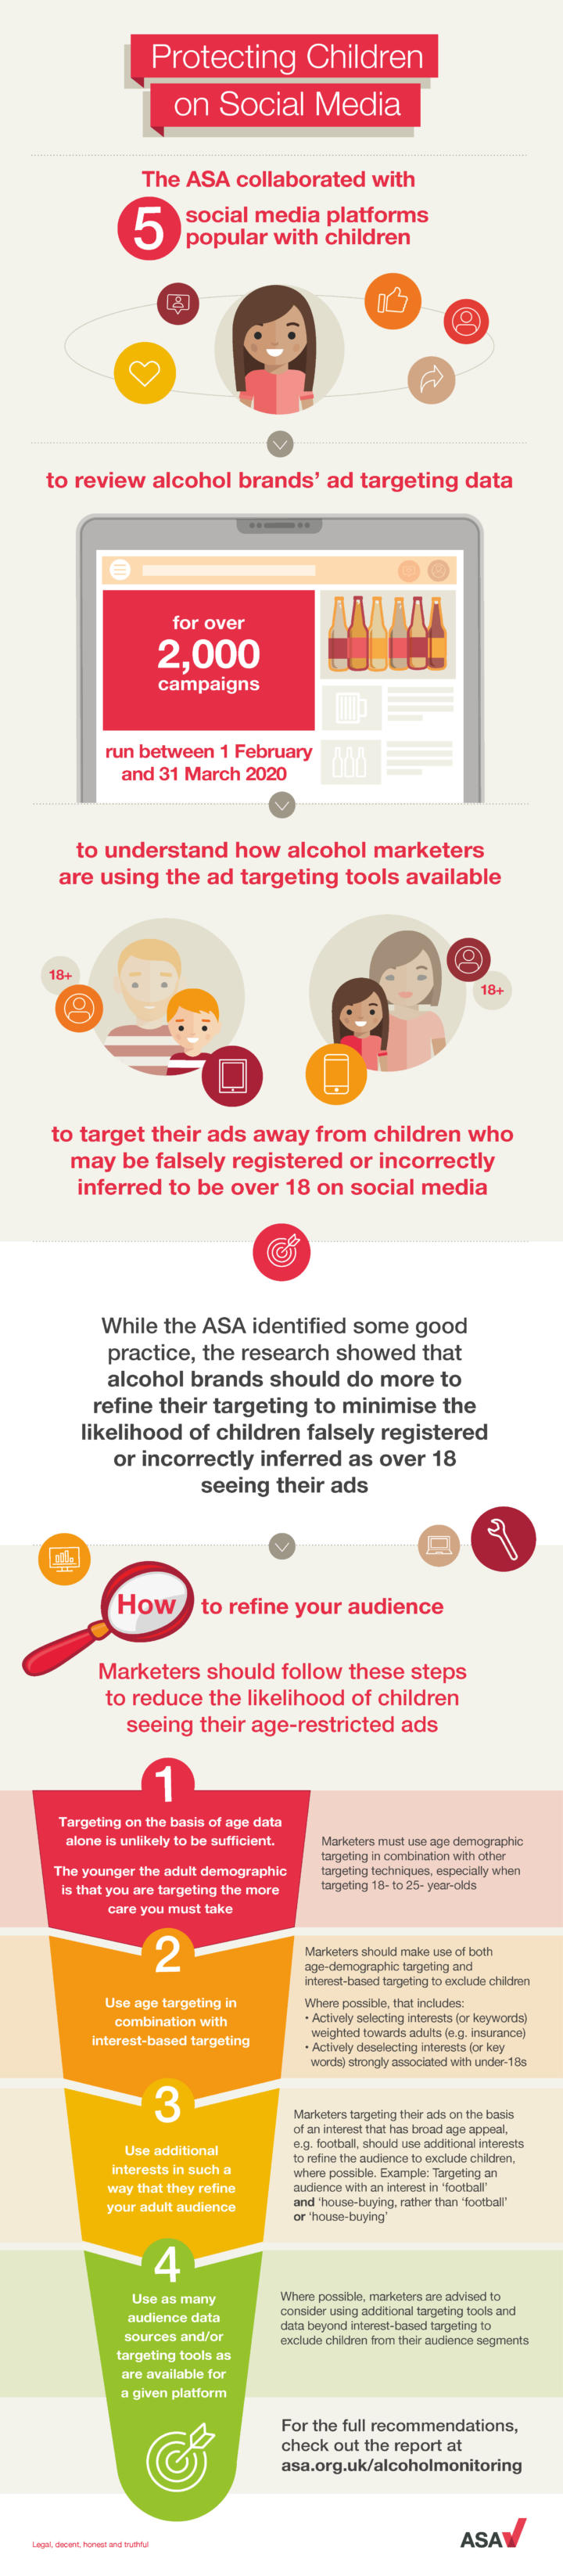 ASA_Protecting_Children_on_Social_Media.jpg